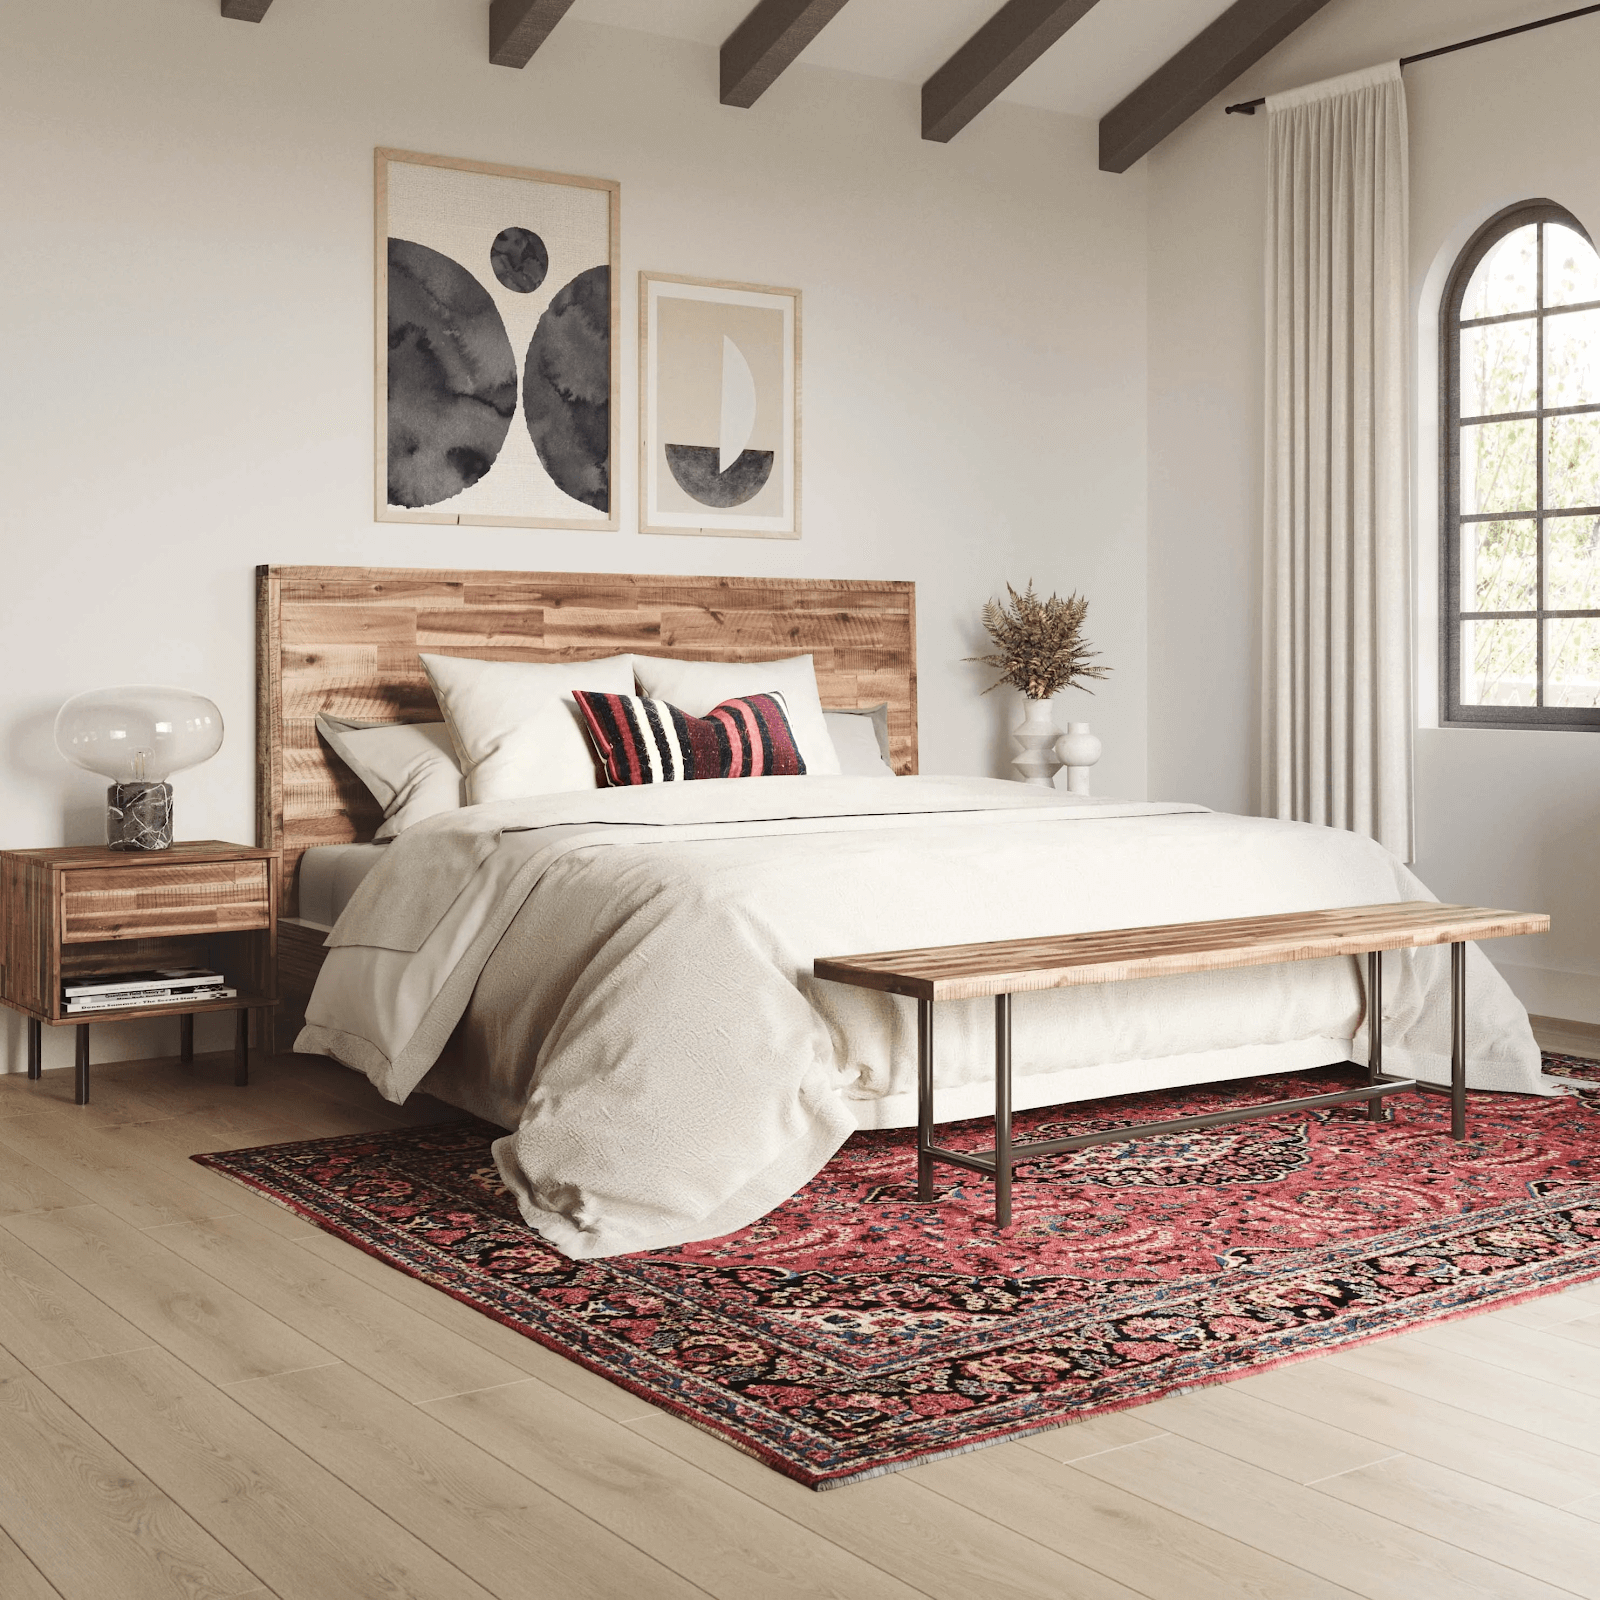 Bộ giường tủ cưới bằng gỗ kết hợp chân sắt rất tinh tế